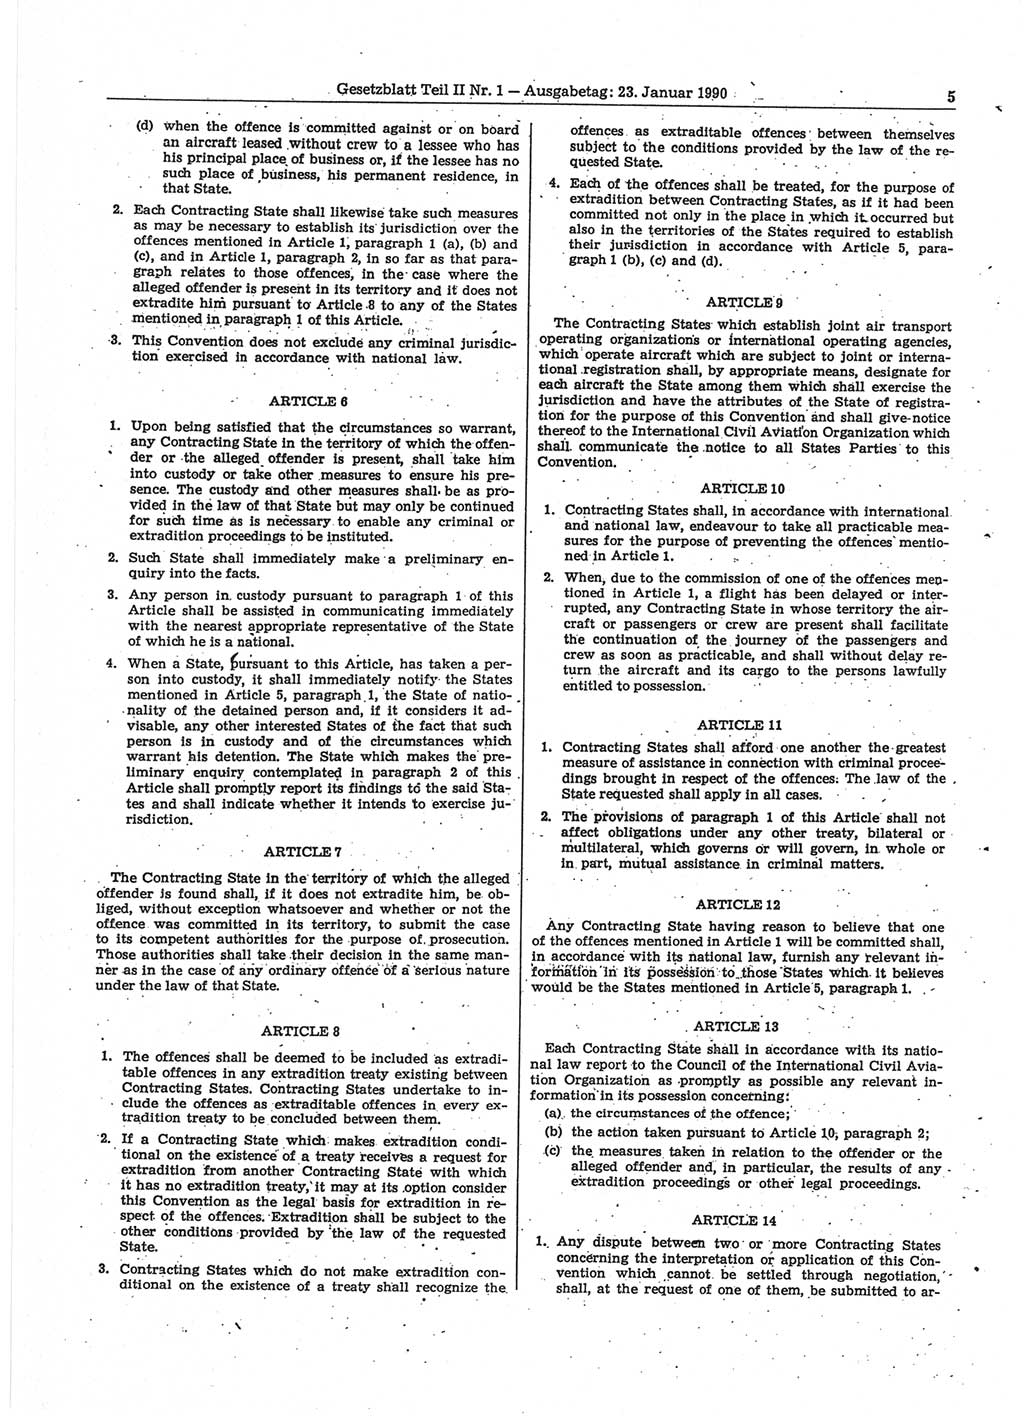 Gesetzblatt (GBl.) der Deutschen Demokratischen Republik (DDR) Teil ⅠⅠ 1990, Seite 5 (GBl. DDR ⅠⅠ 1990, S. 5)